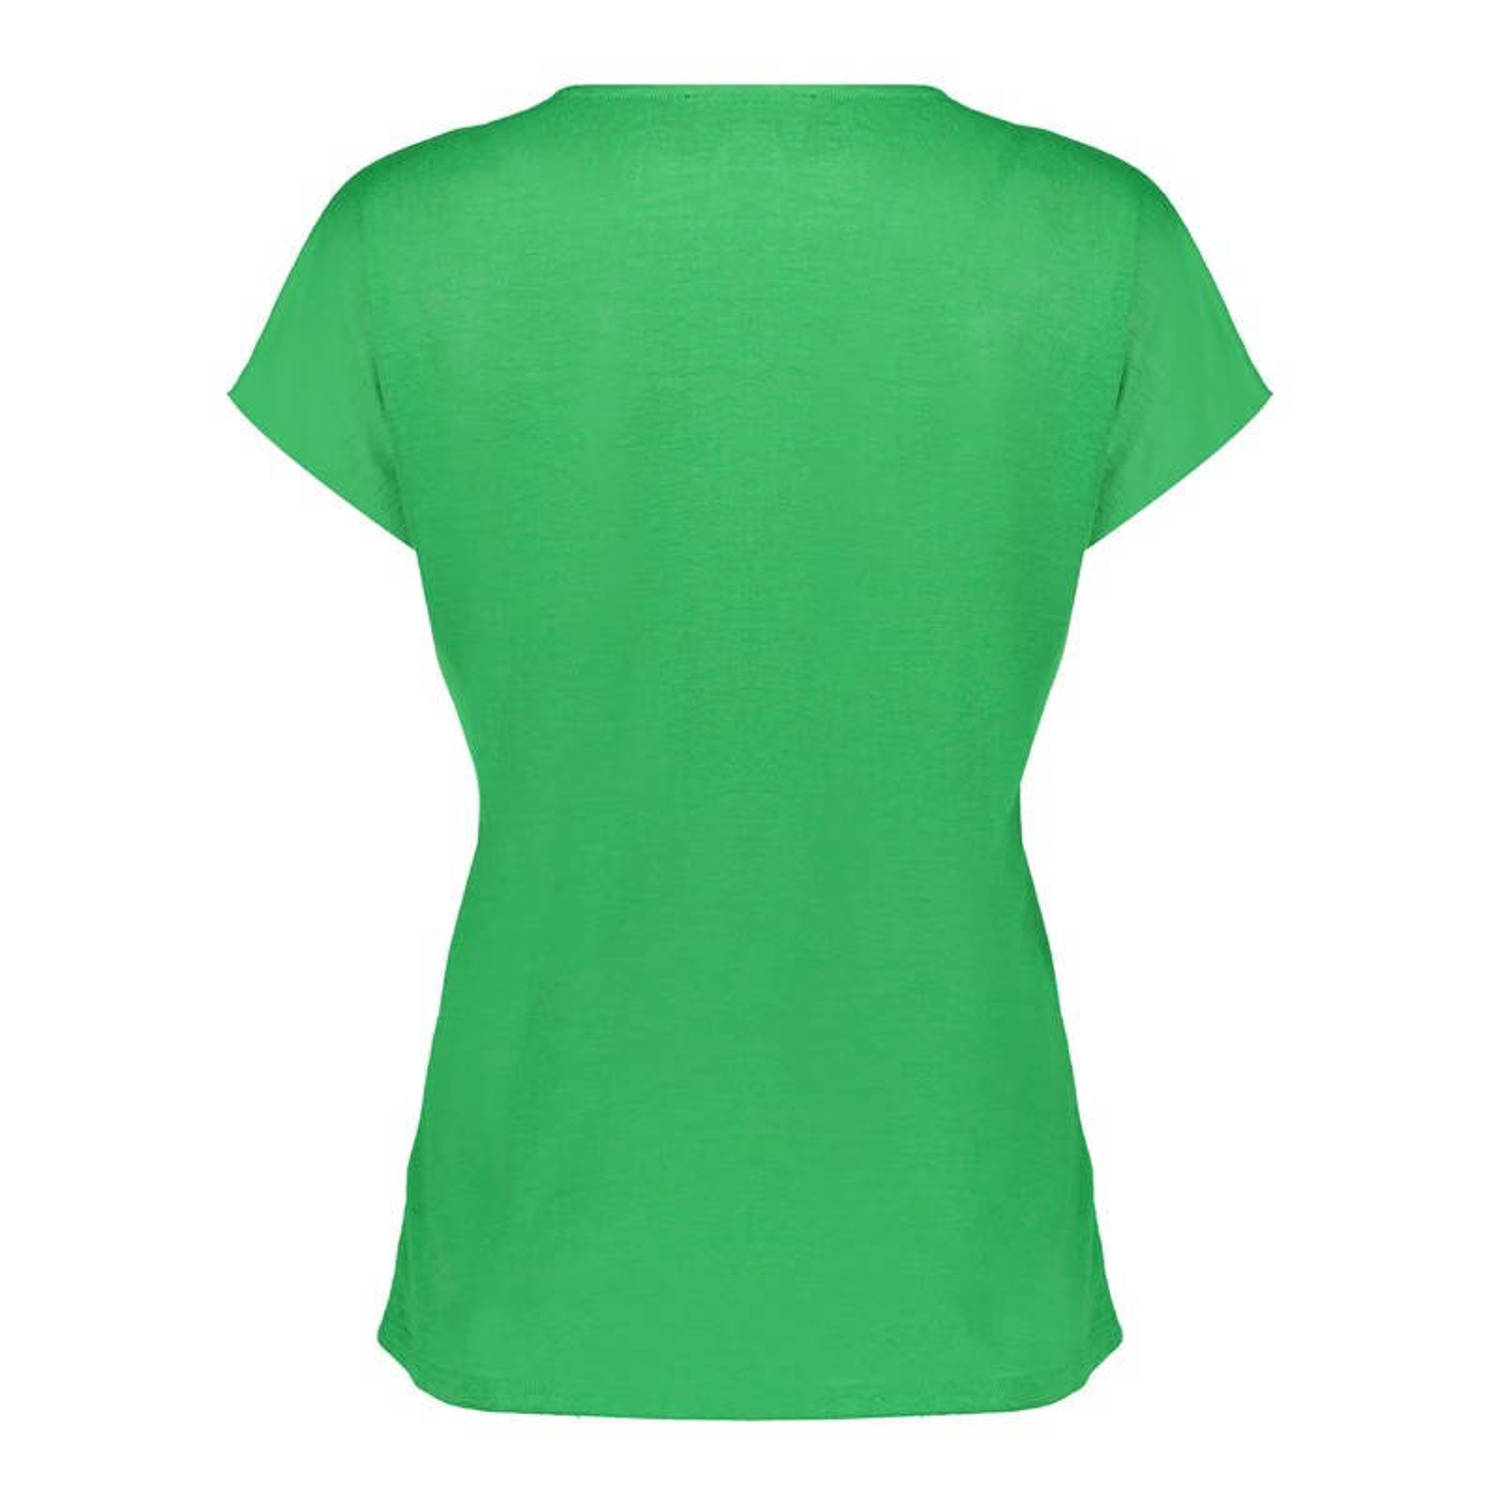 Geisha T-shirt groen